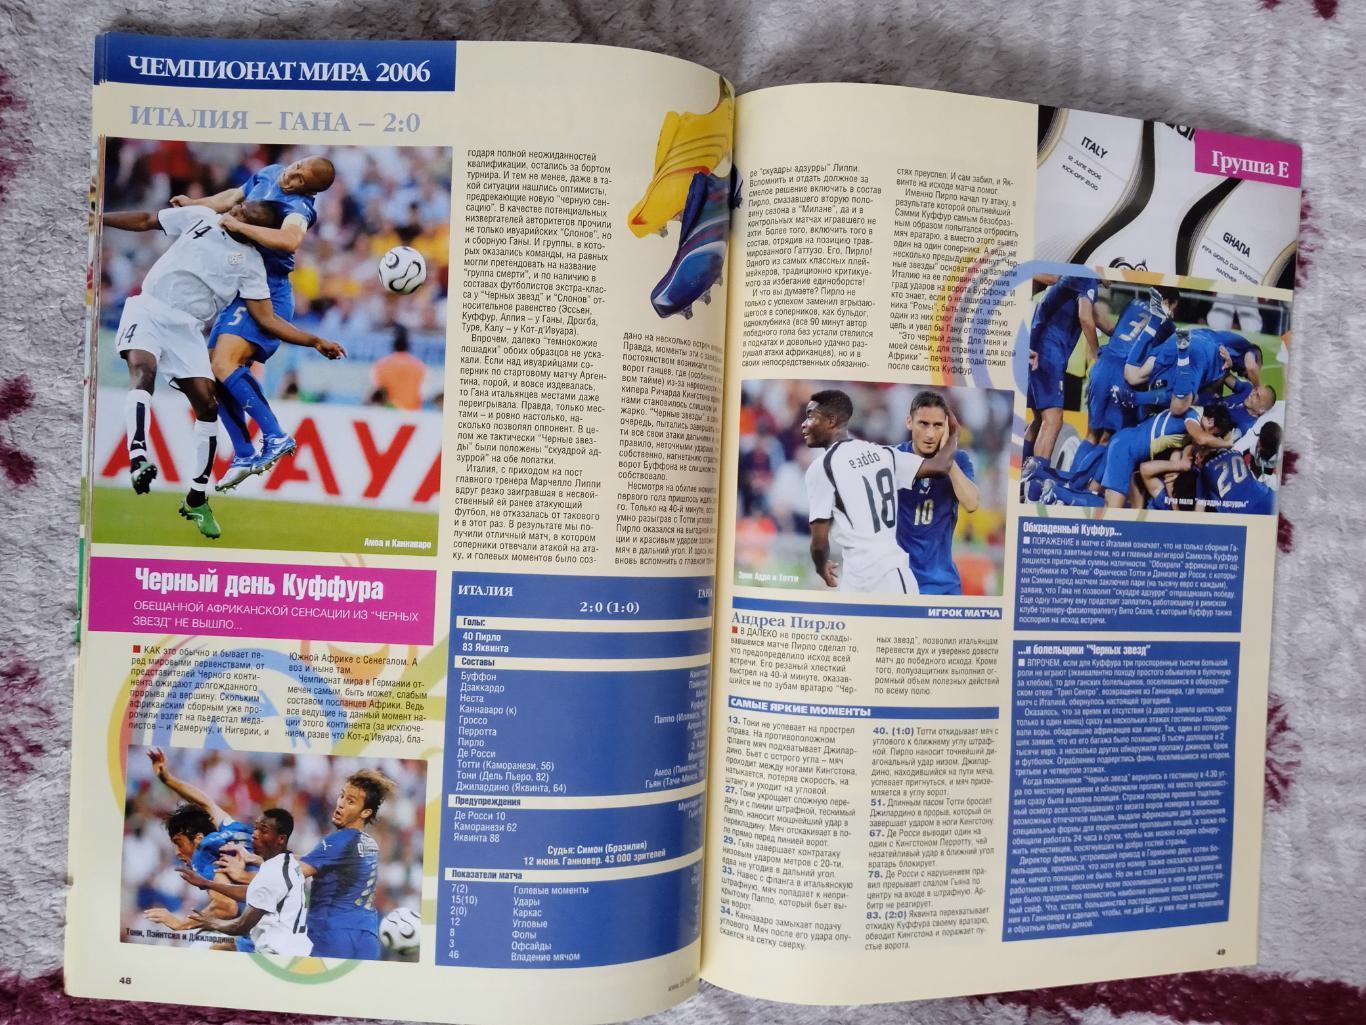 Журнал.Весь футбол июль 2006 г. (ЧМ 2006 Германия). 1